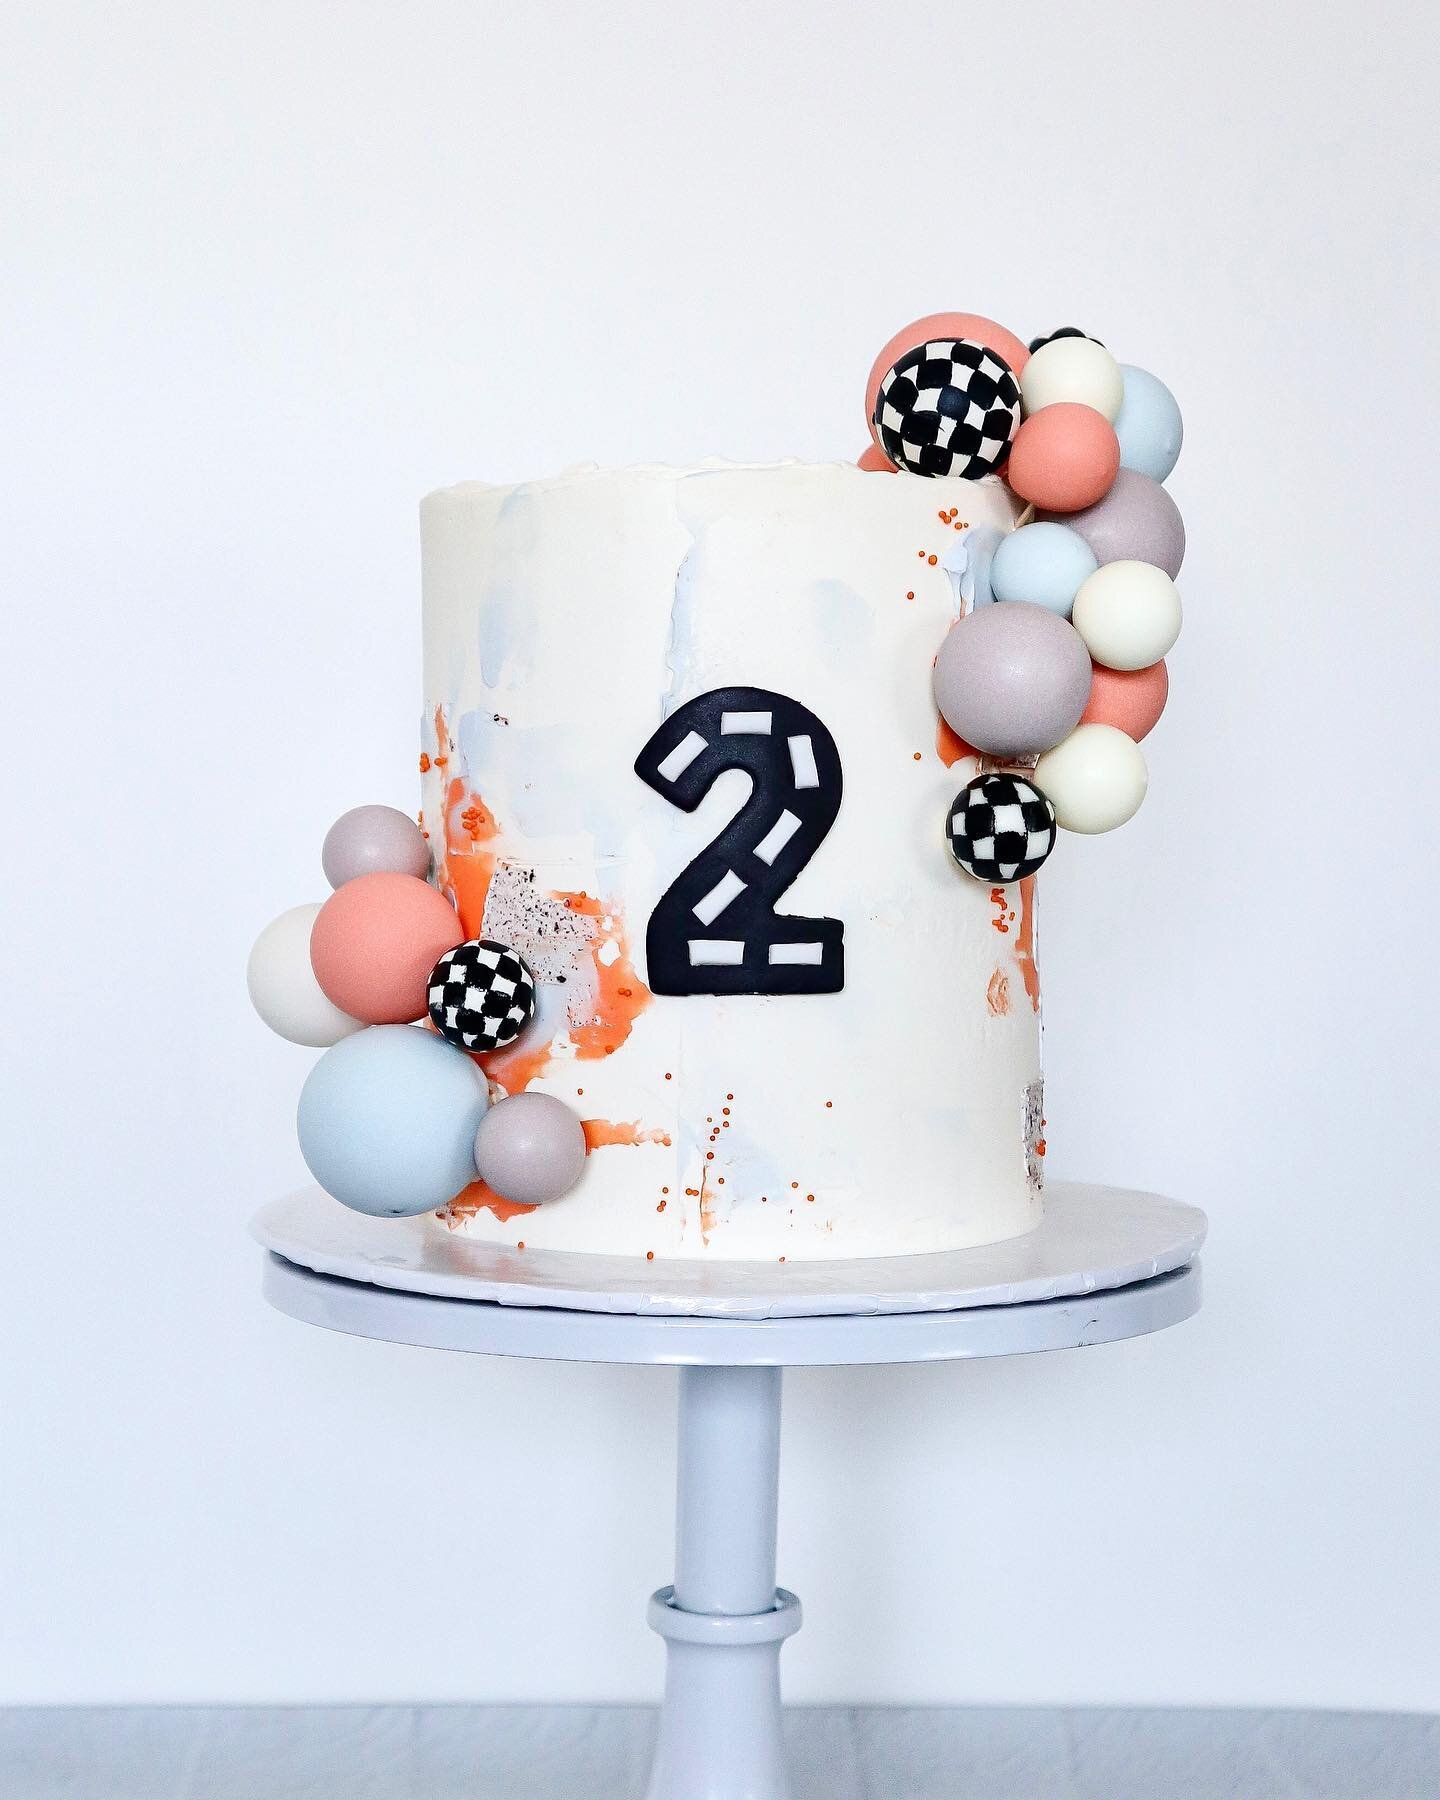 I&rsquo;m still obsessed with this theme! 🏎💨

#twofast #twofastbirthday #carcake #racecarcake #cake #buttercreamcake #swissmeringuebuttercream #yxecakes #saskatooncakes